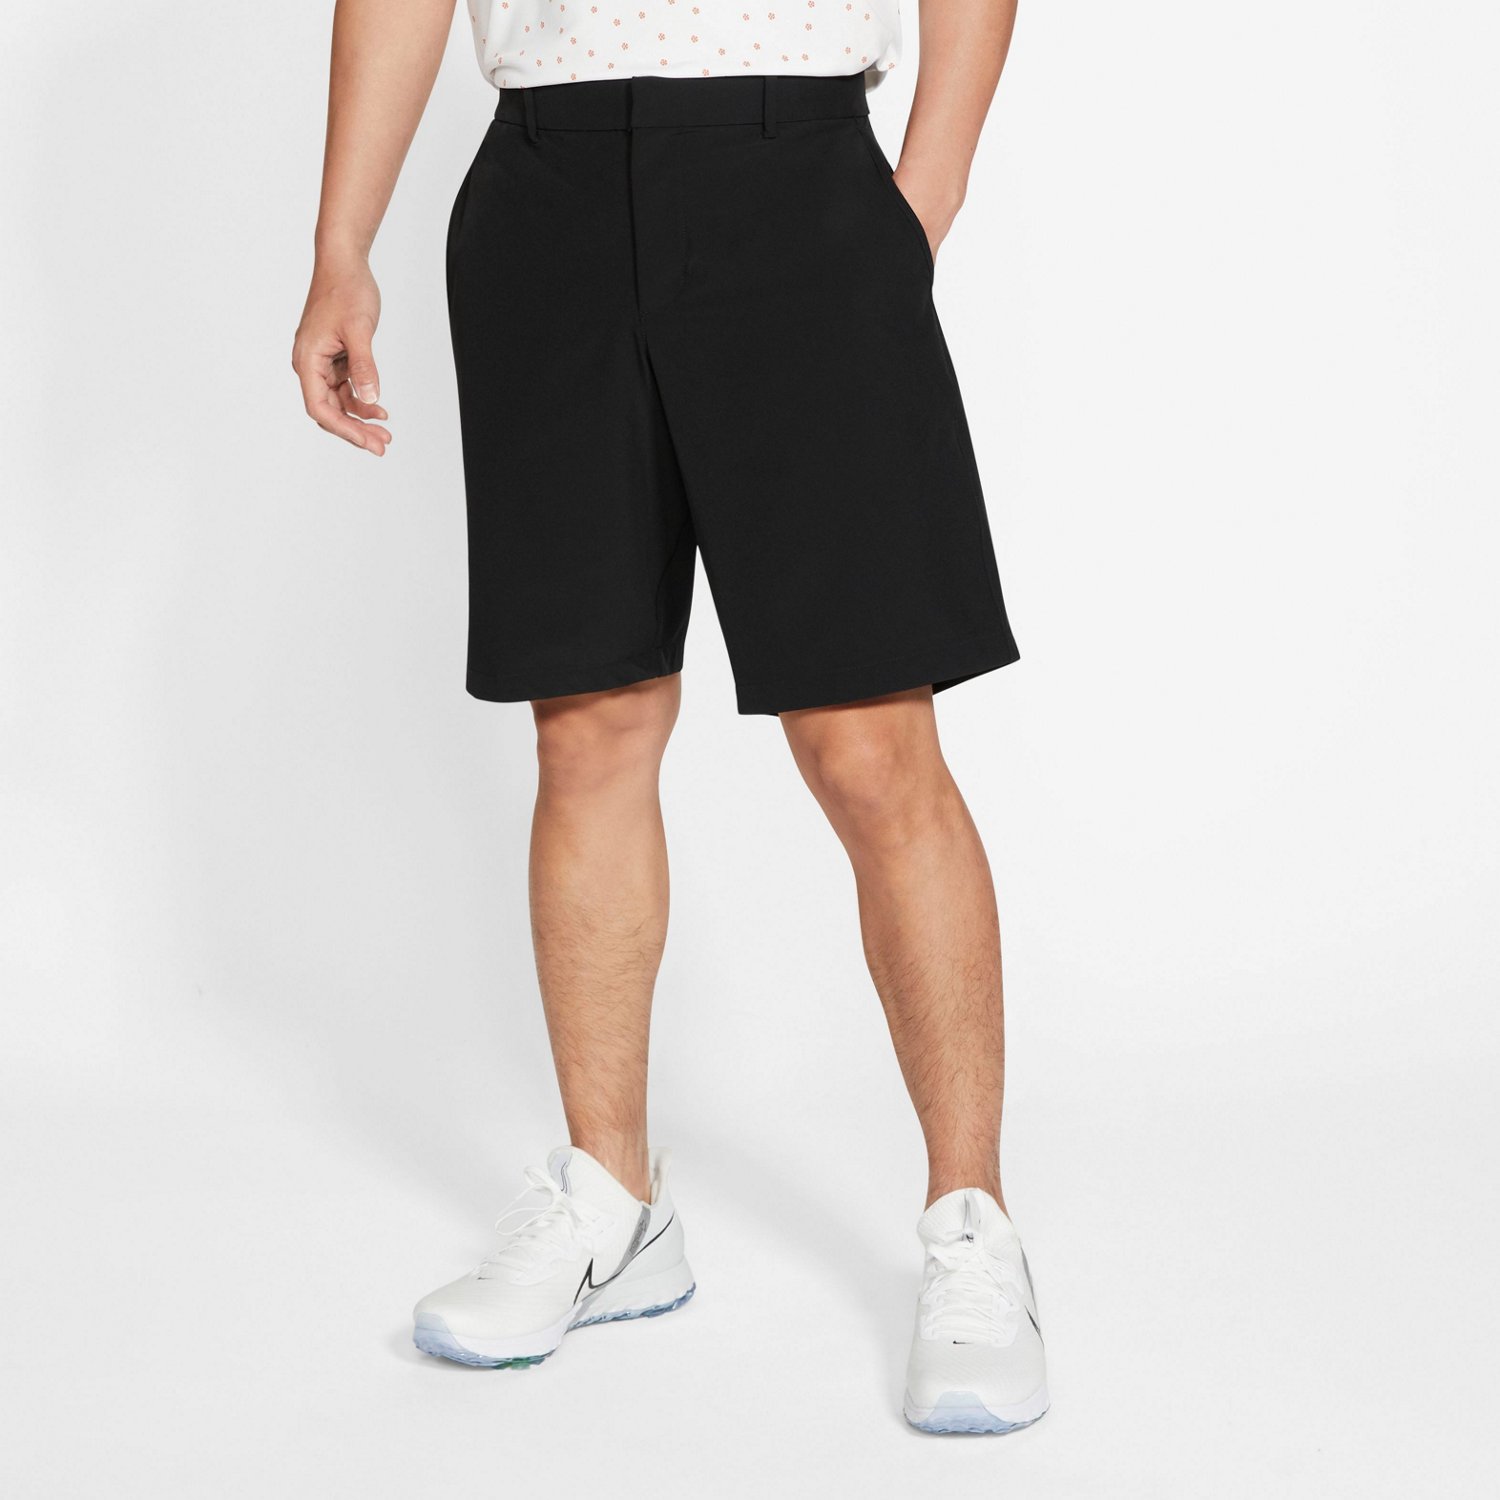 Nike Men's Flex Hybrid Golf Shorts | Free Shipping at Academy